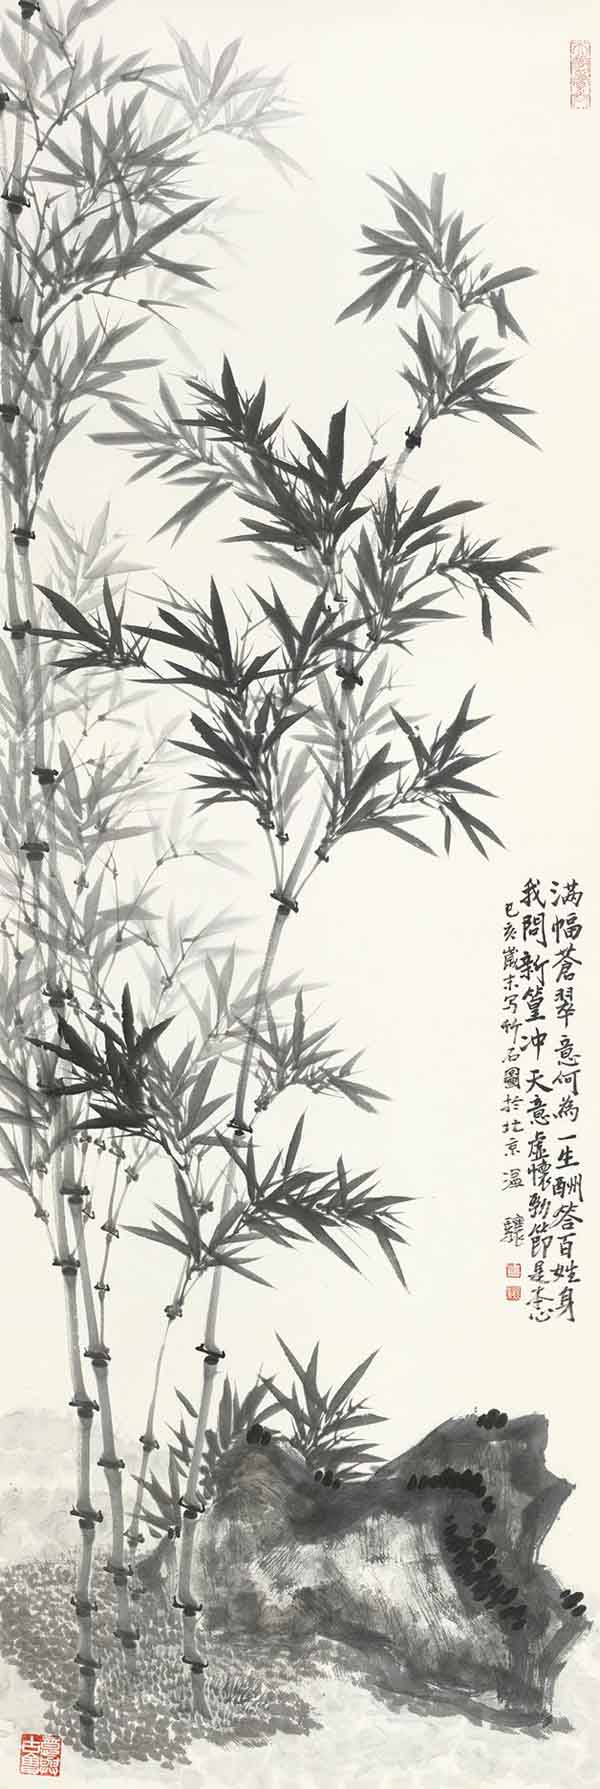 墨语凝骧：温骧山水画展 明日在中国美术馆启幕